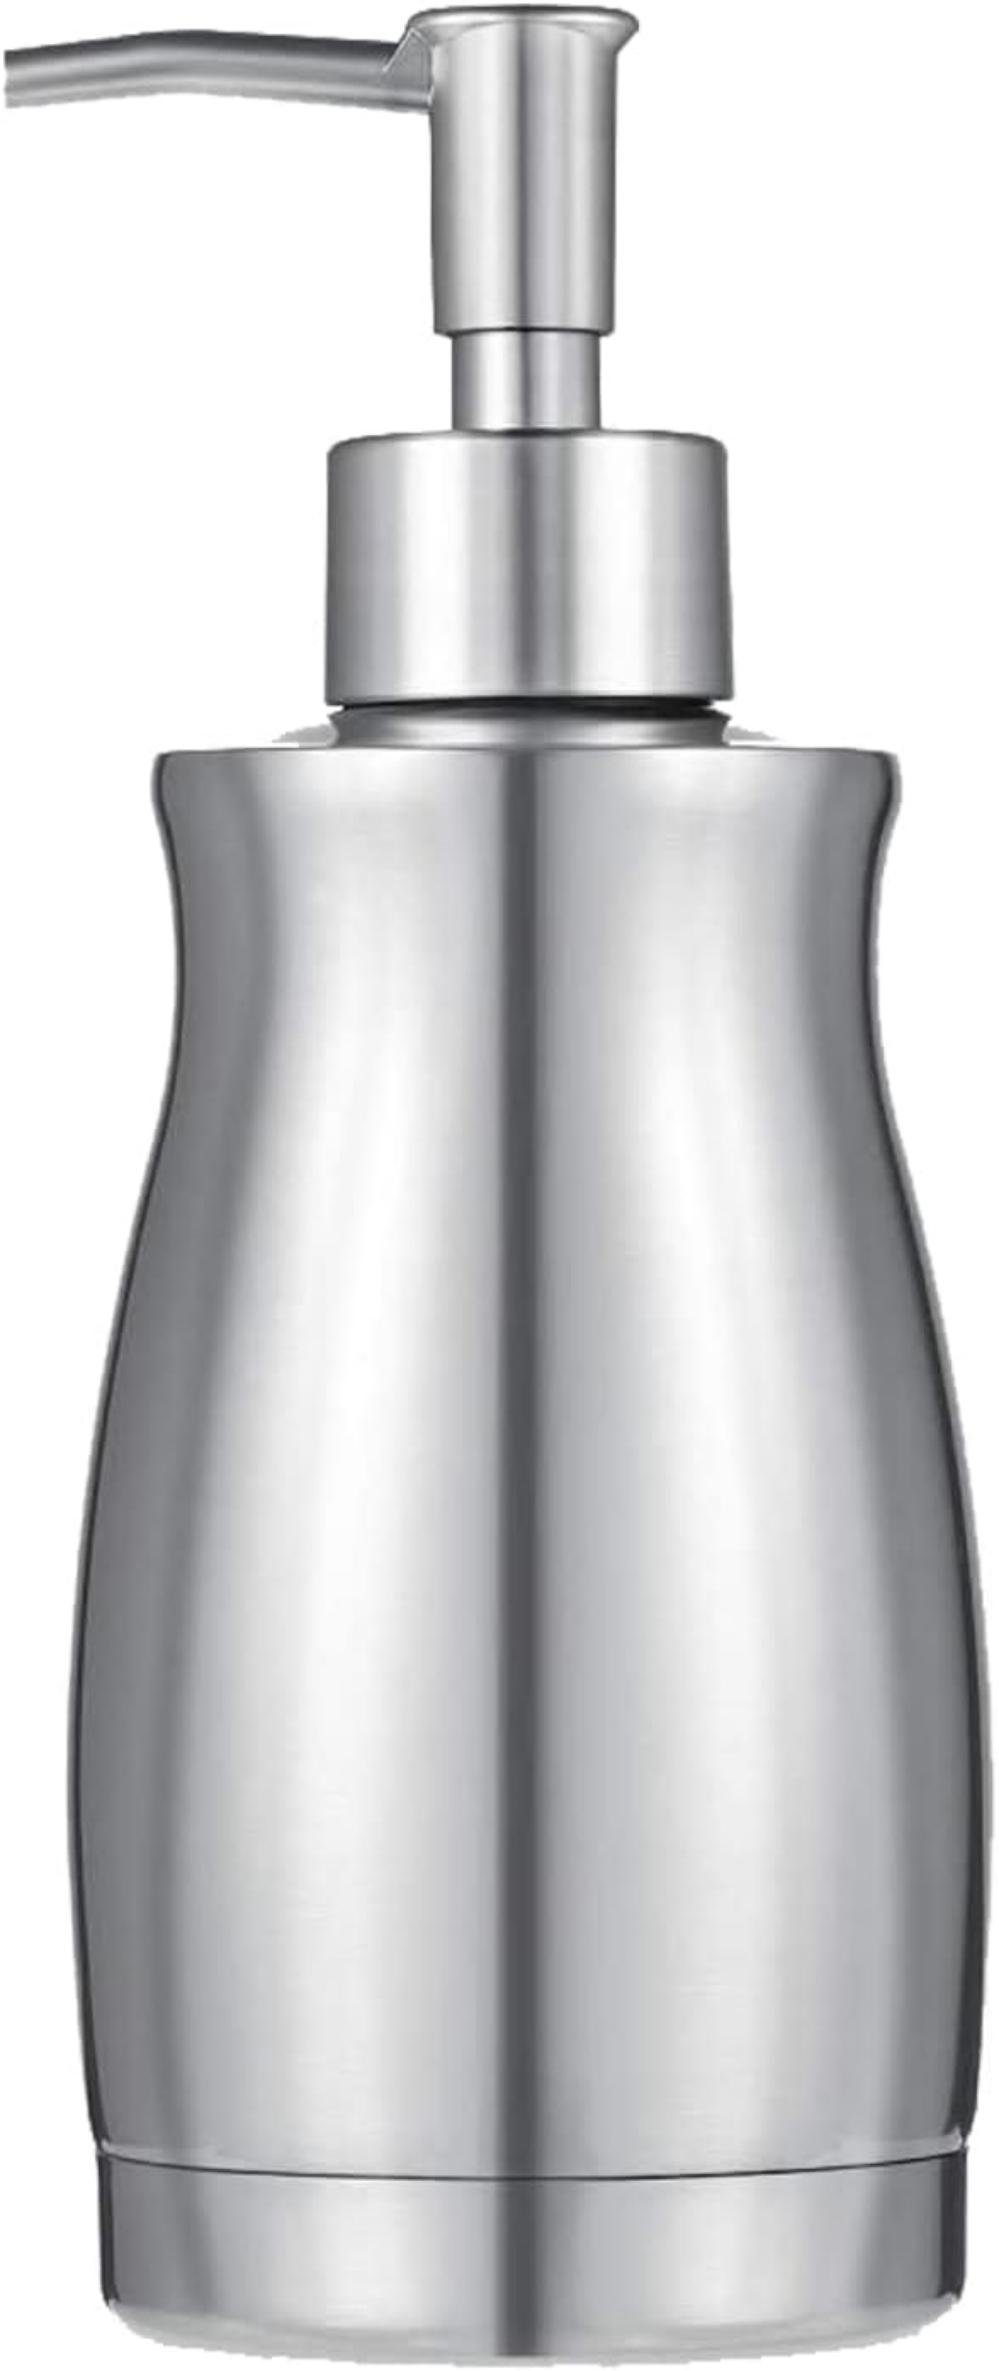 TUABUR Seifenablage Edelstahl-Seifenspender, 382 ml, nachfüllbar, Nickel. Küche, Bad, 1-St.